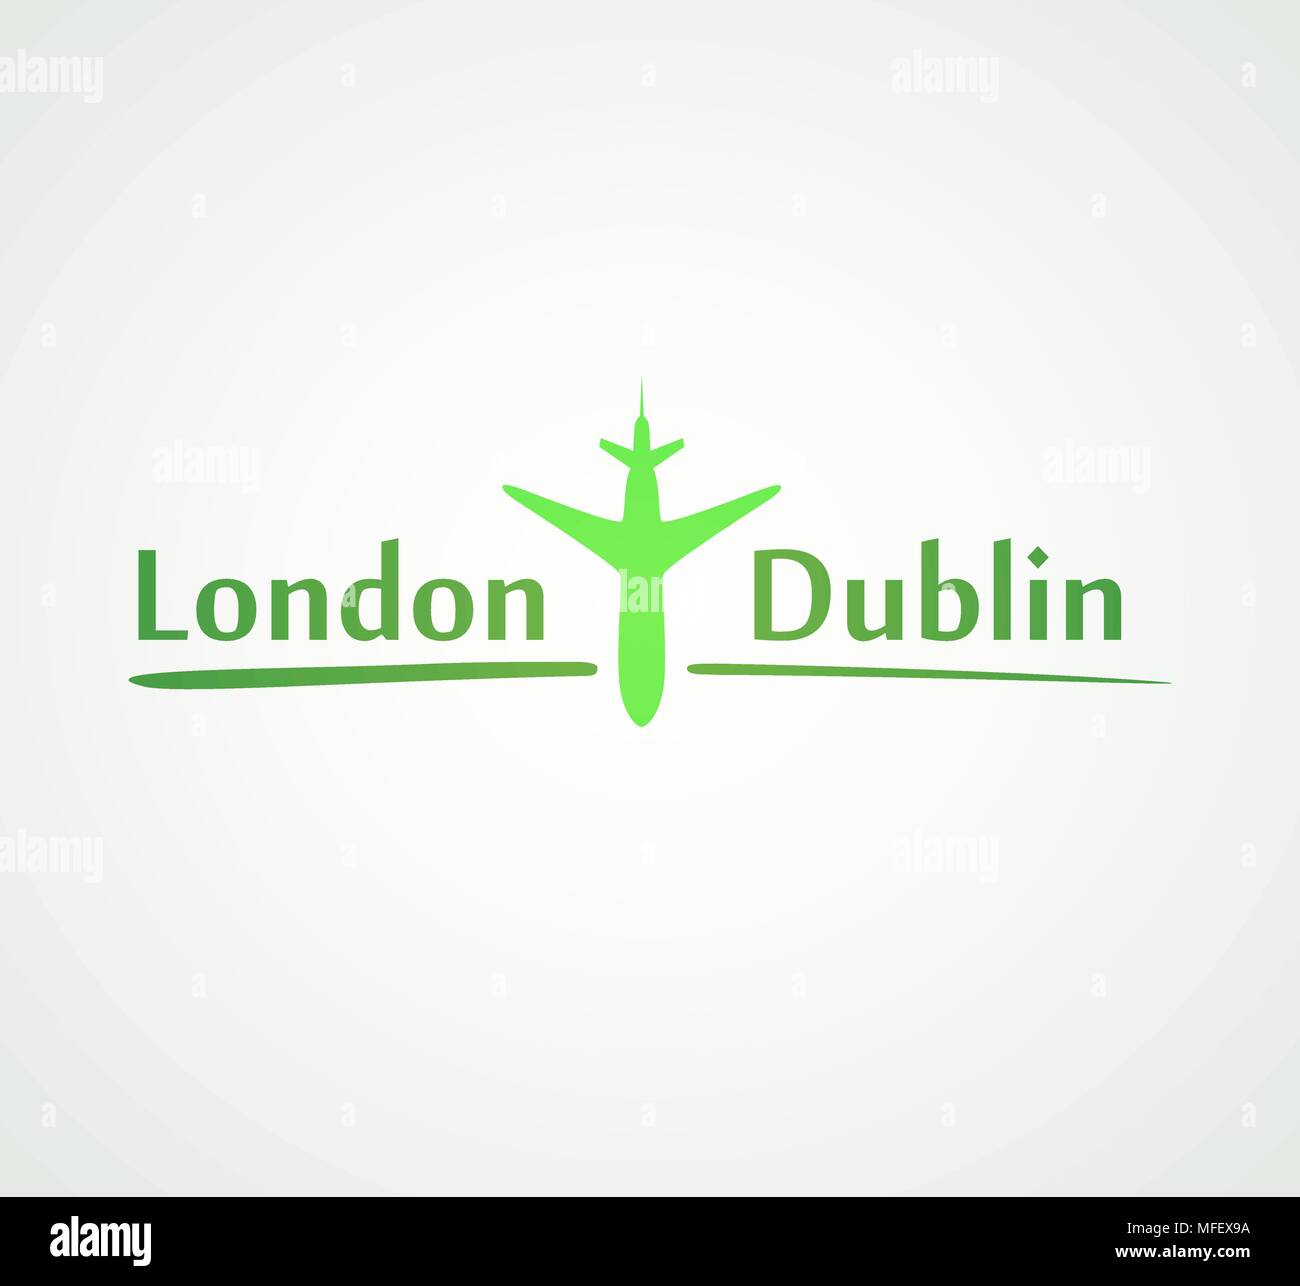 Londres - Dublin Illustration de Vecteur